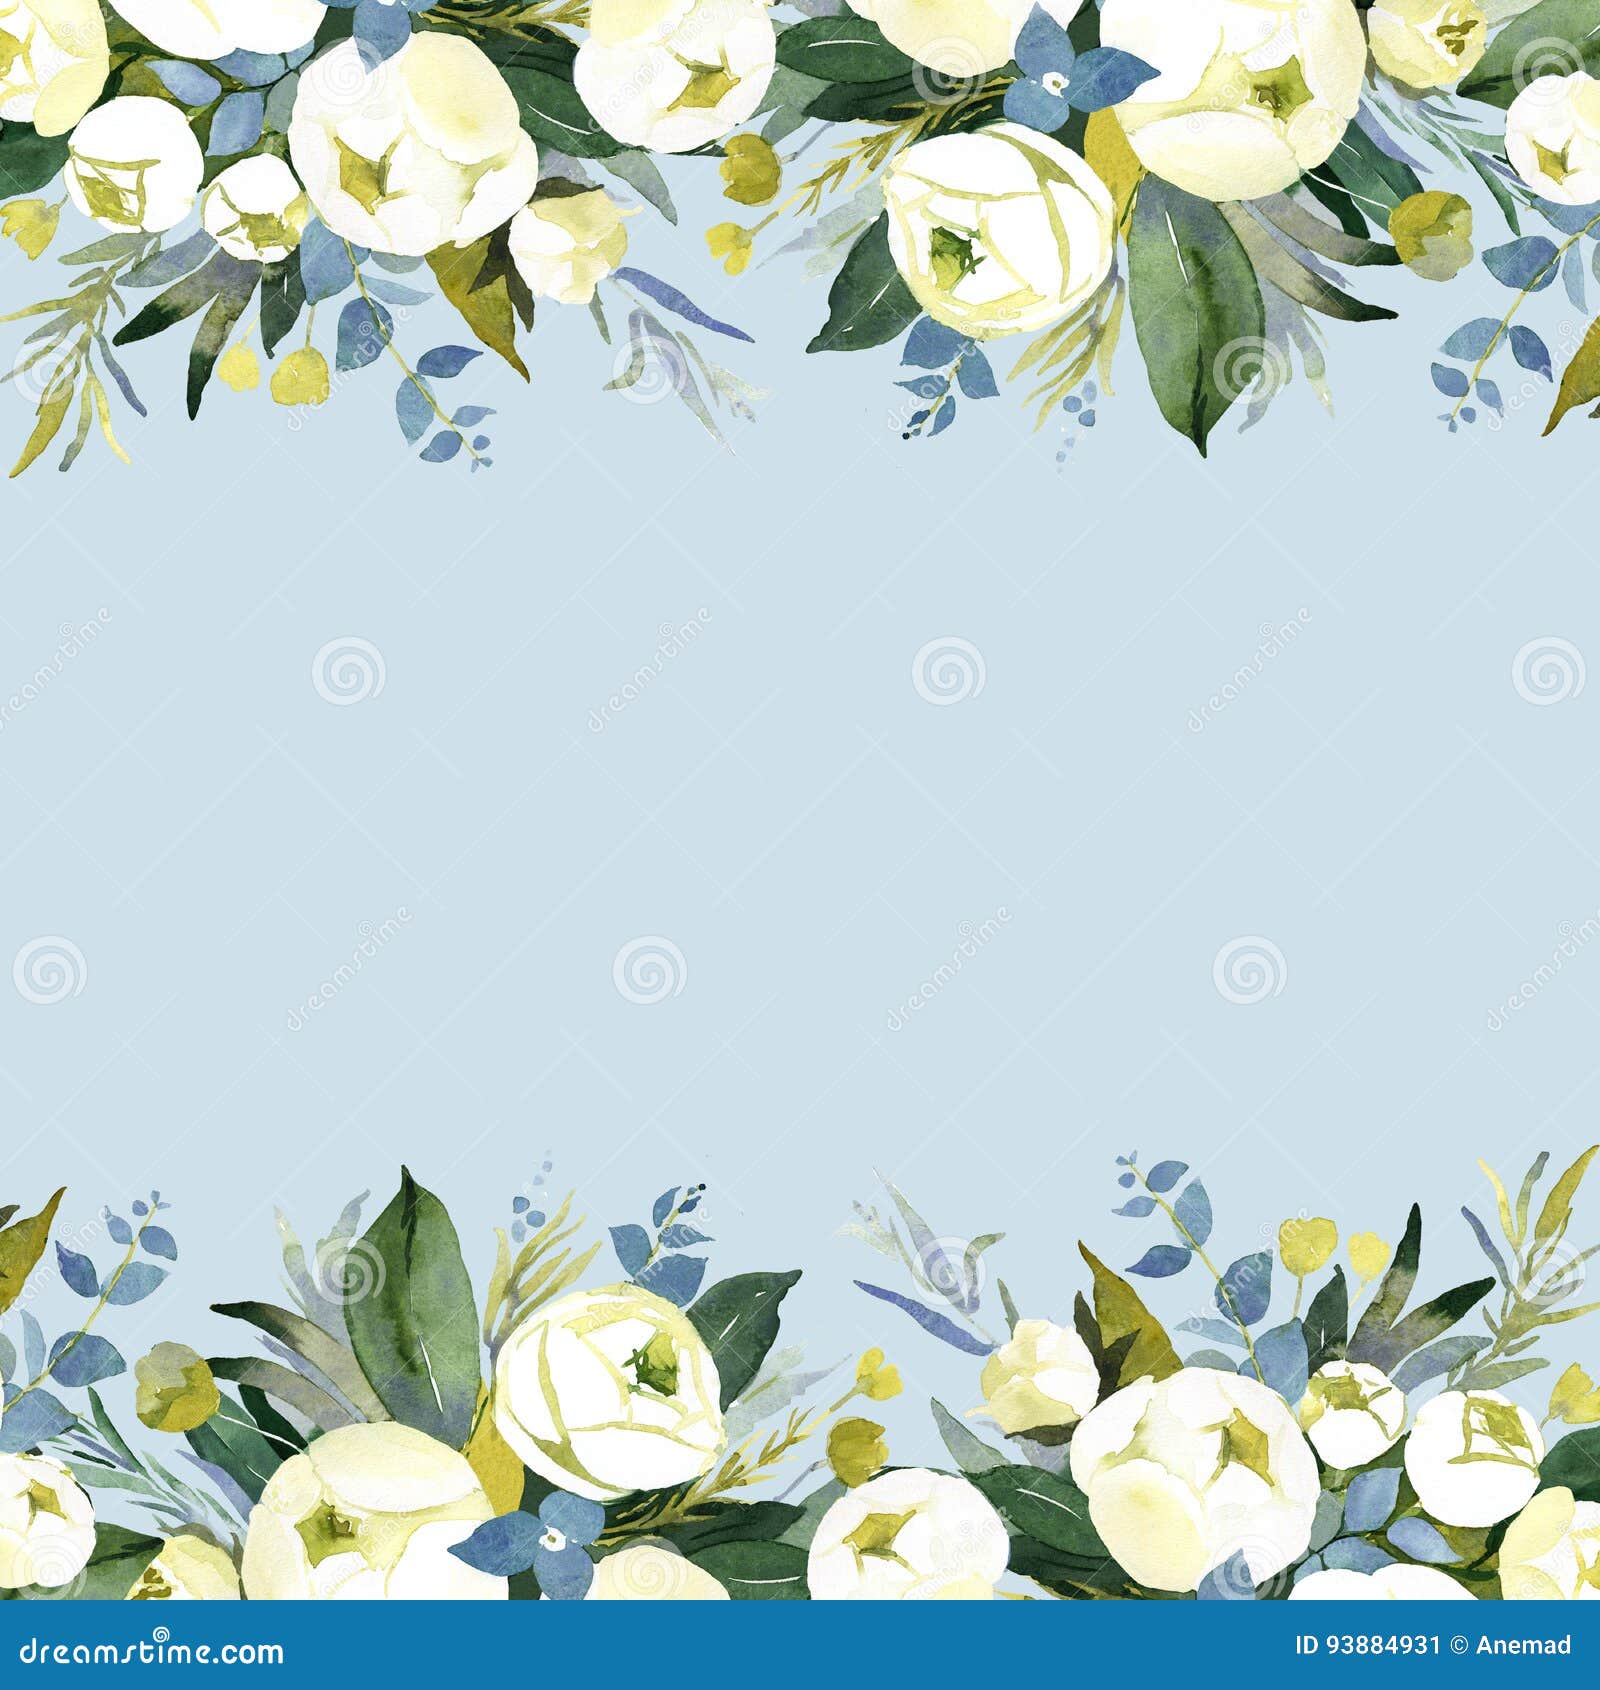 Hoa nước màu xanh cho phông nền đám cưới - Cùng khám phá bức tranh hoa tuyệt đẹp bằng những bông hoa nước màu xanh ngọc bích, tạo nên không gian lãng mạn cho đám cưới bạn. Hình ảnh đầy tinh tế và cực kỳ đẹp mắt sẽ khiến bạn muốn dành thời gian để ngắm nhìn và cảm nhận.